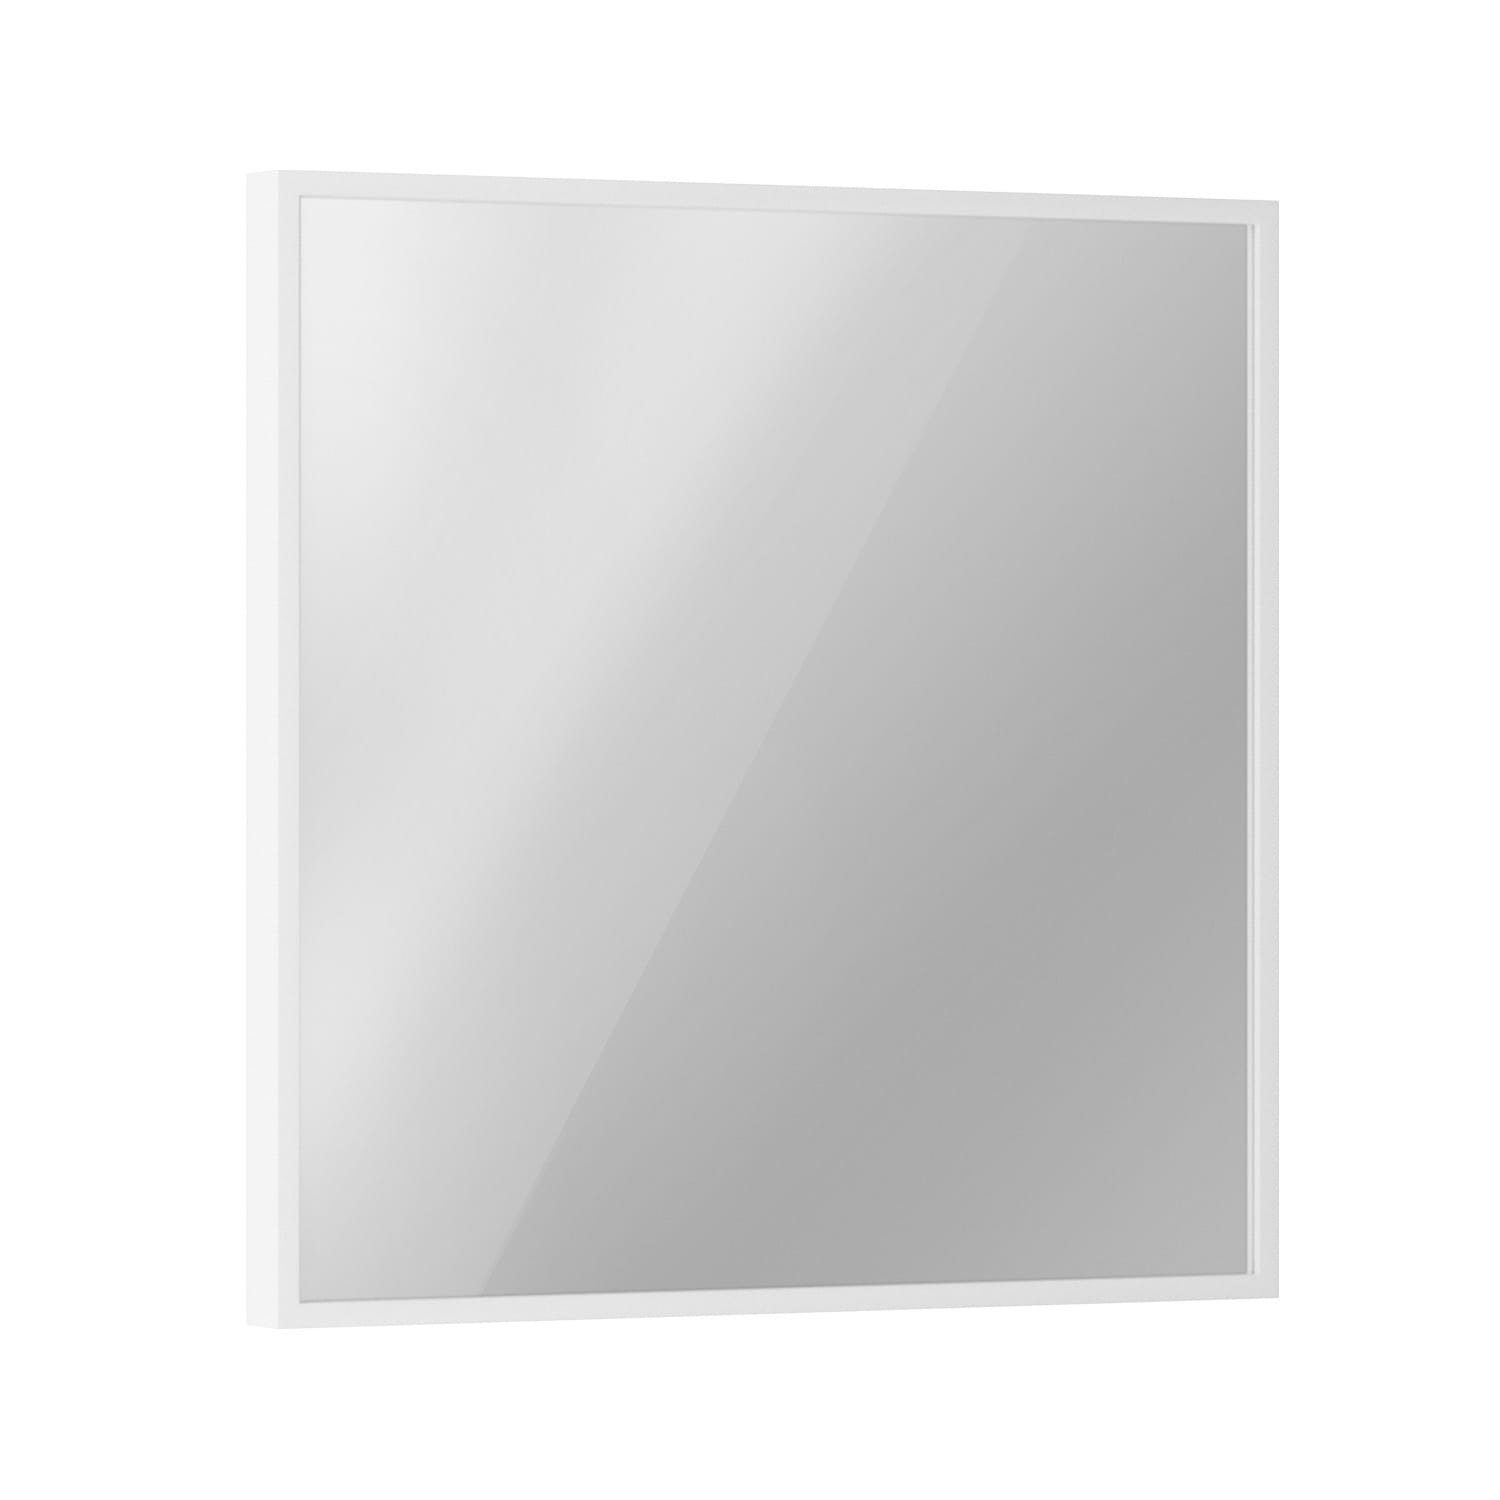 Klarstein Heizkörper La Palma Smart 500 W white, elektrische Infrarot Wandheizung Spiegel Thermostat Heizung elektrisch